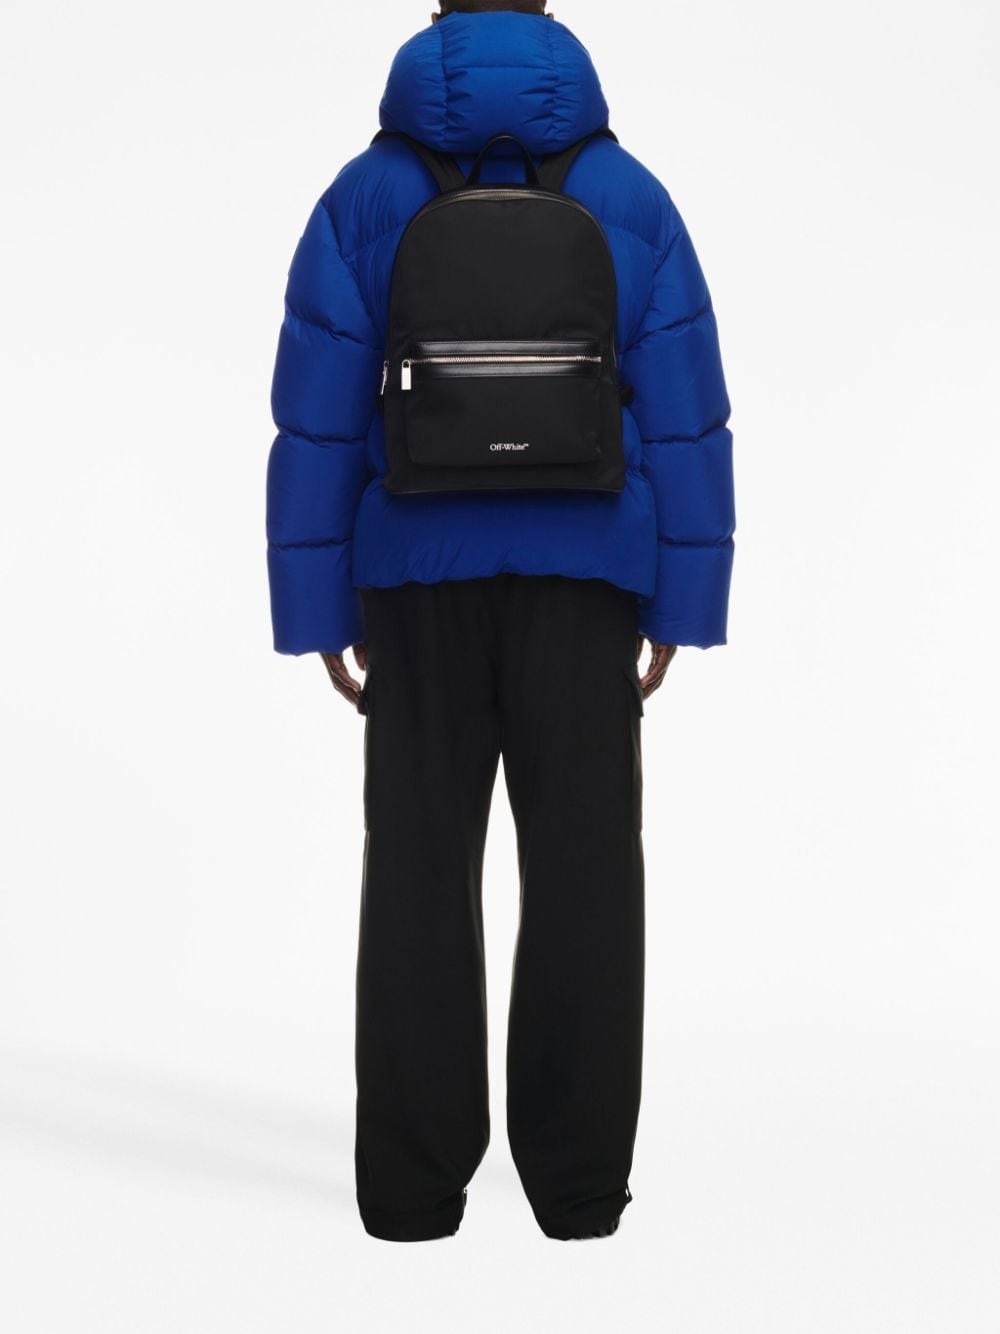 Off-White c/o Virgil Abloh Men's Arrow Tuc Tie Dye Backpack - Black - Backpacks